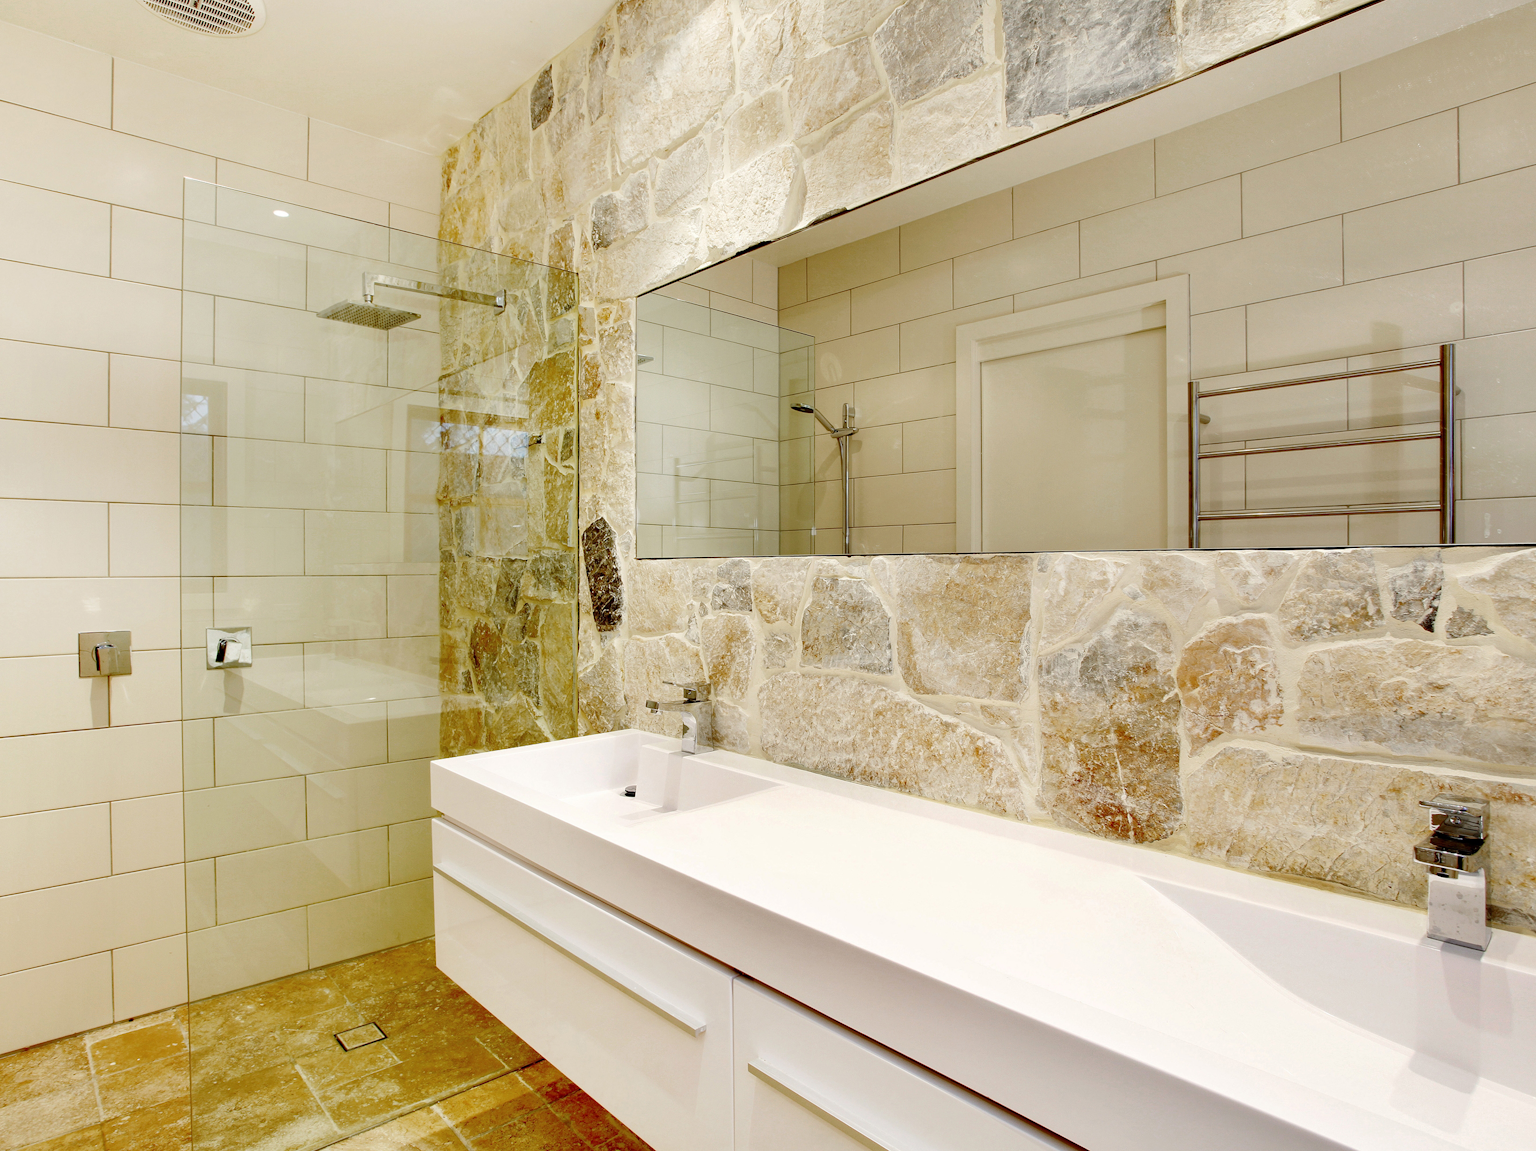 Coolum limestone random ashlar walling used as feature wall in bathroom design